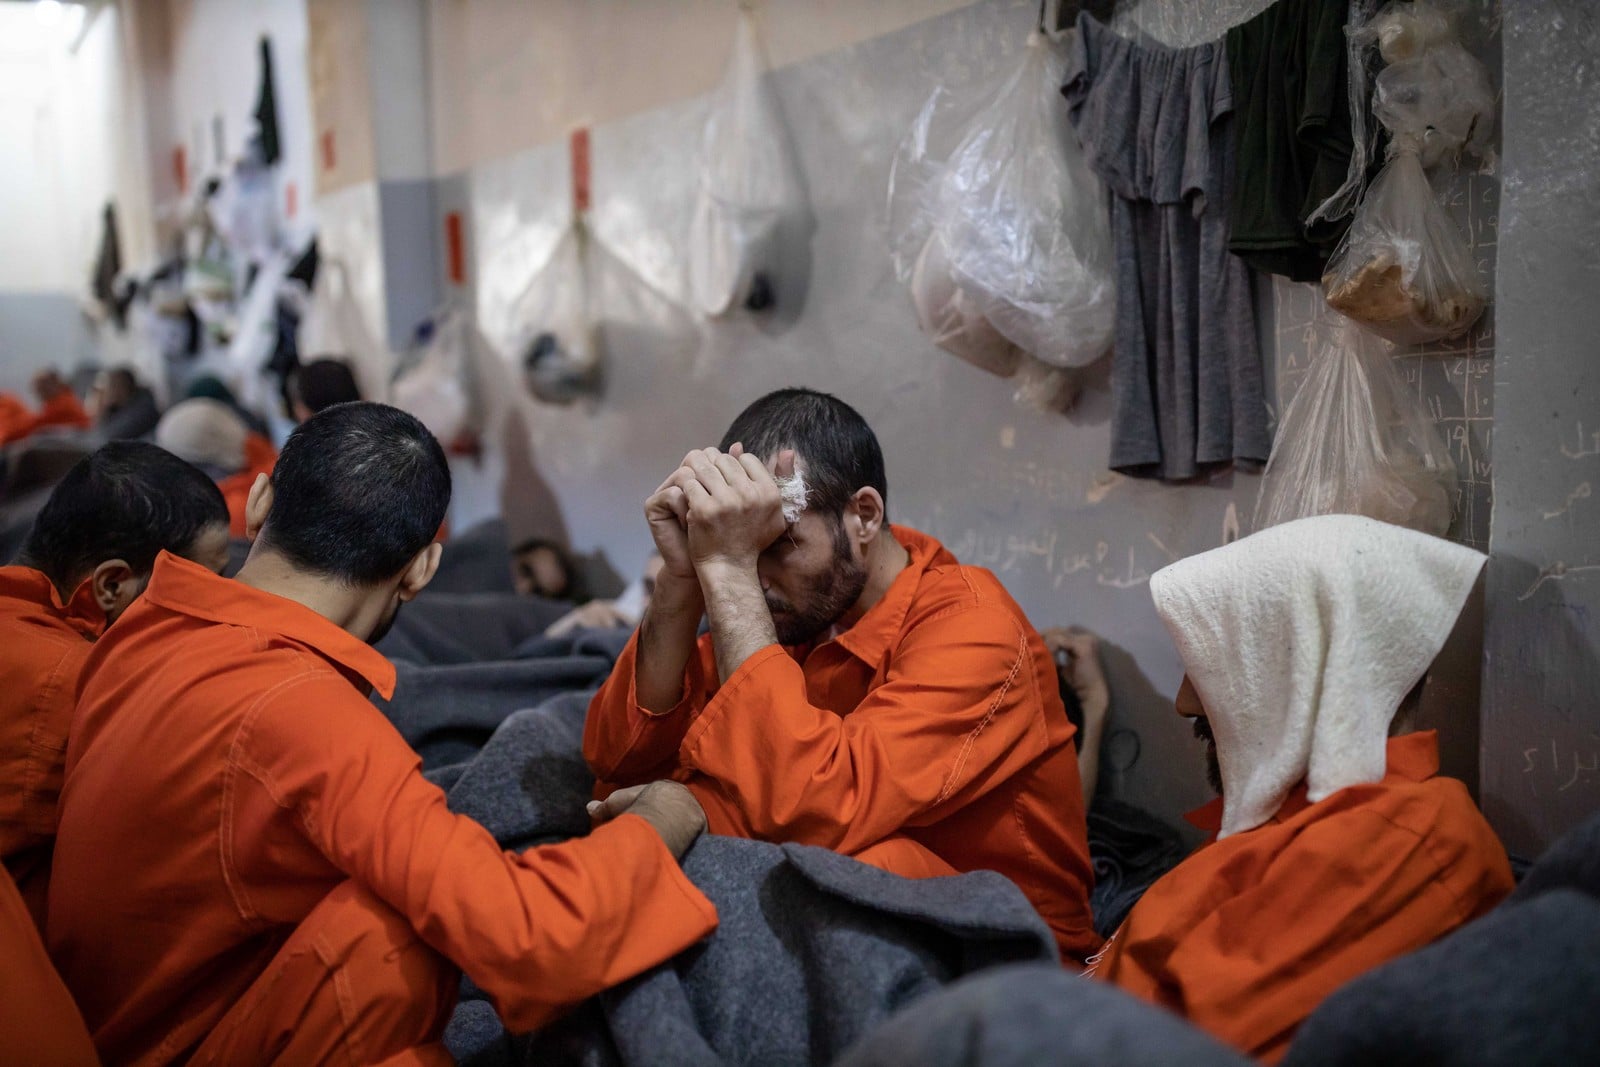 Octobre 2019 dans le Nord-Est de la Syrie, une prison abrite des membres de Daesh,
Auteurs  : GEAI LAURENCE/SIPA,
Numéro de reportage  : 00932135_000093.